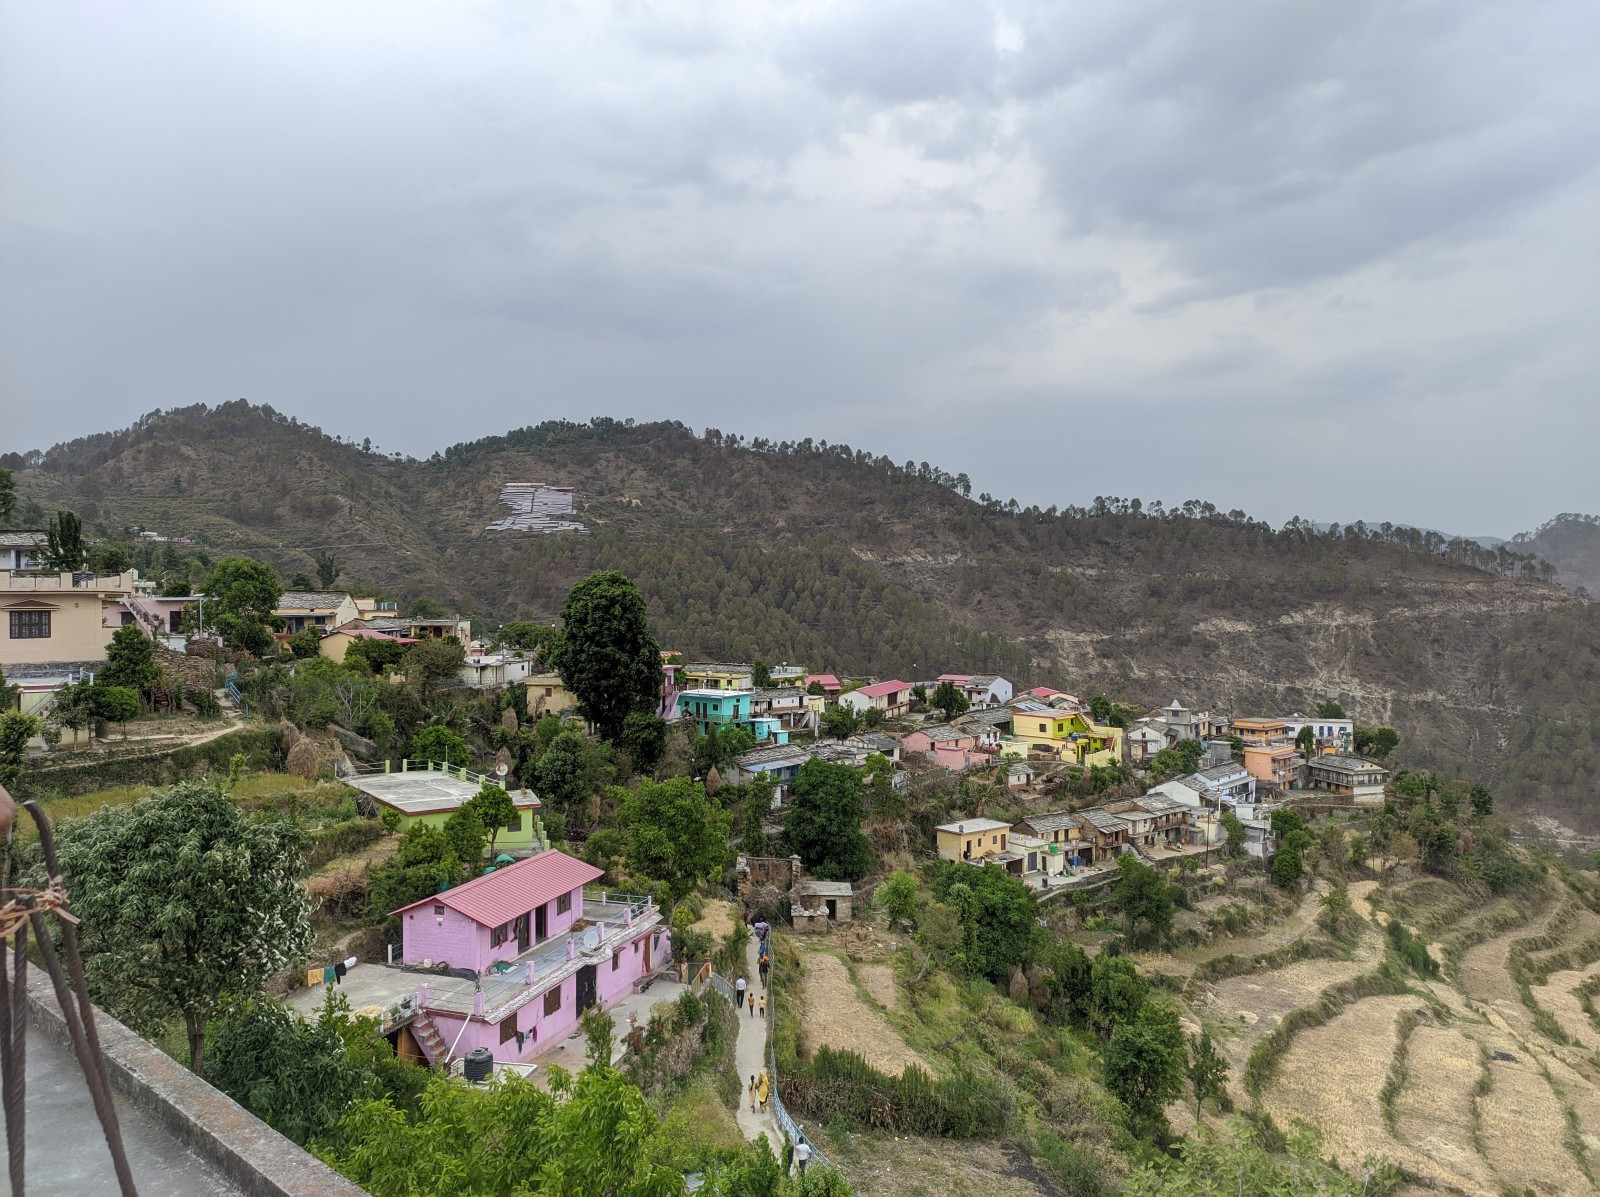 Siku village, Pauri Garhwal